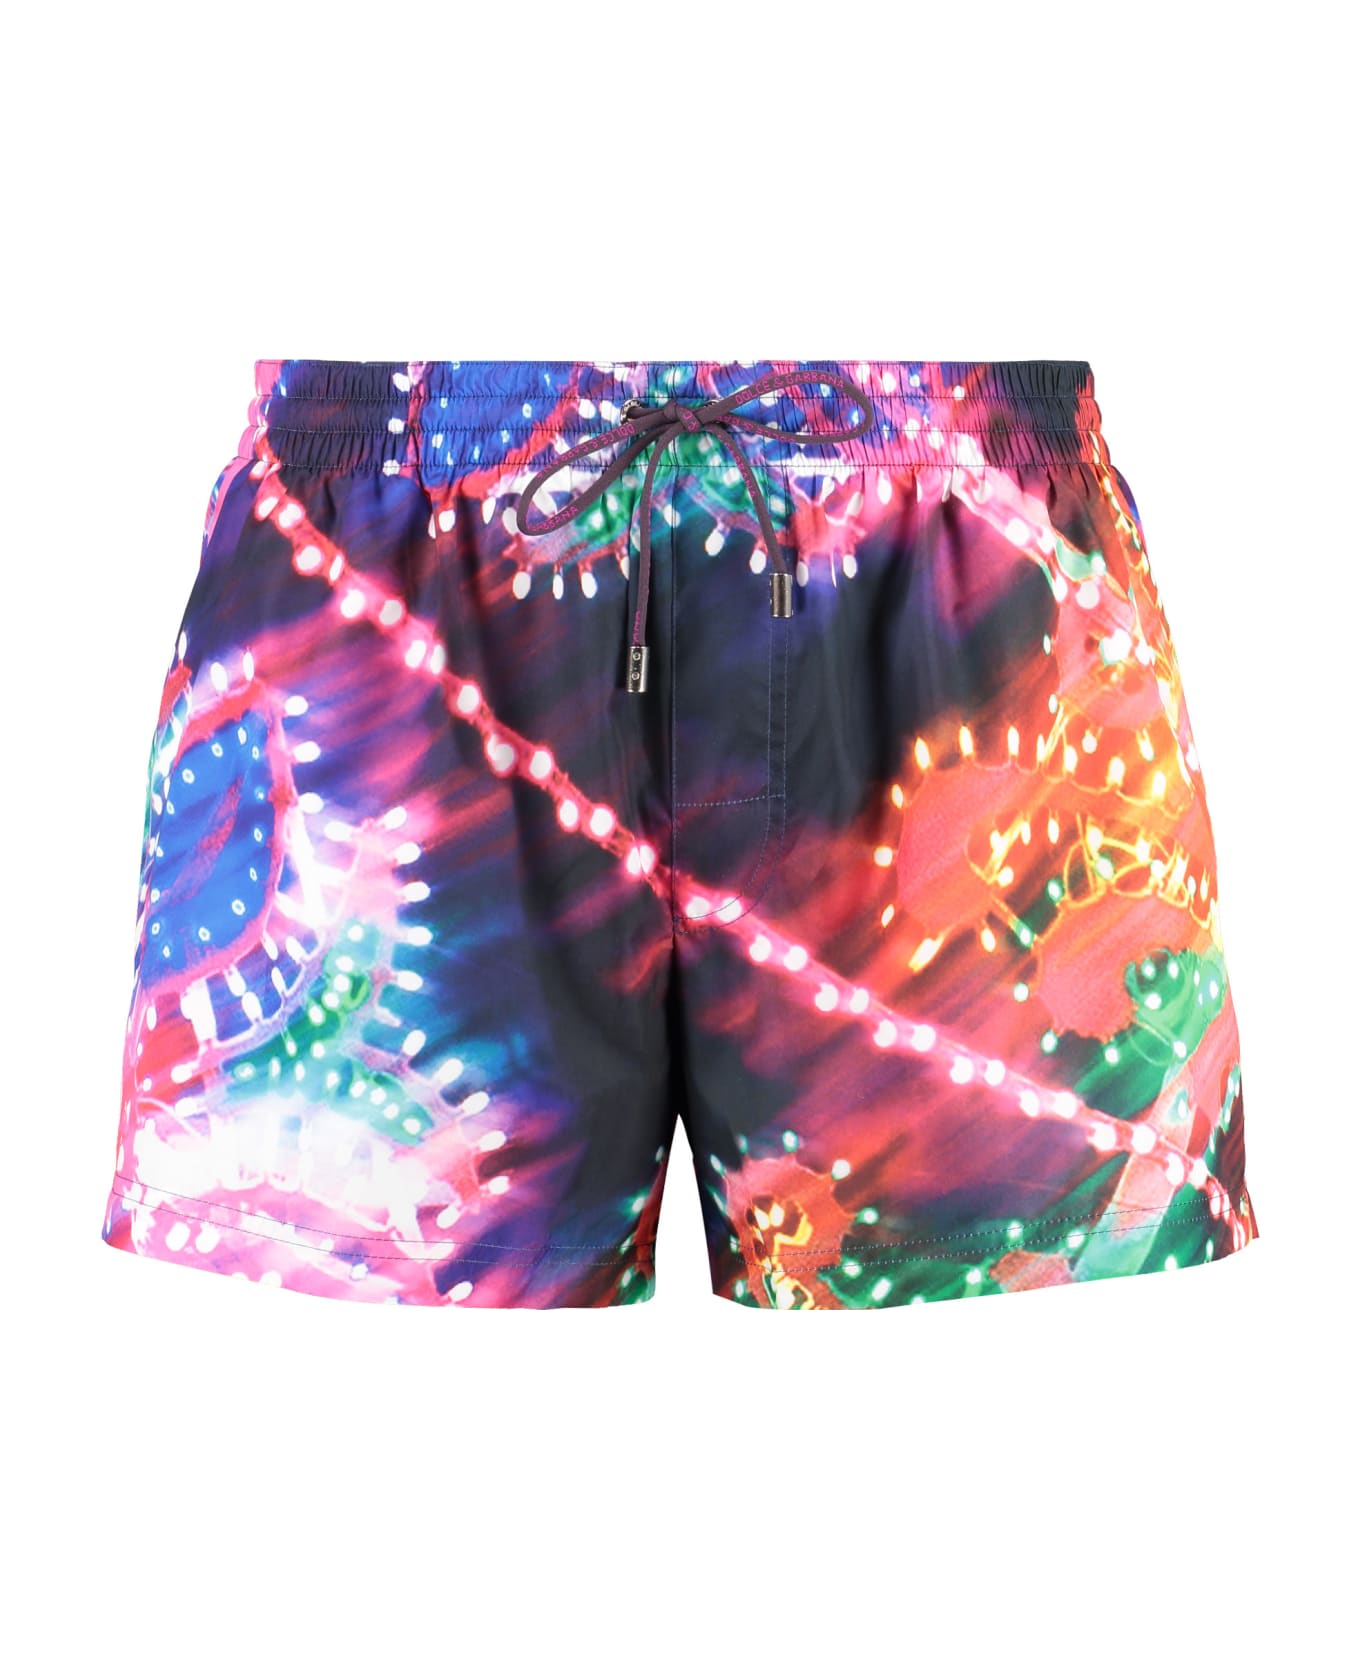 Dolce & Gabbana Printed Swim Shorts - Multicolor 水着